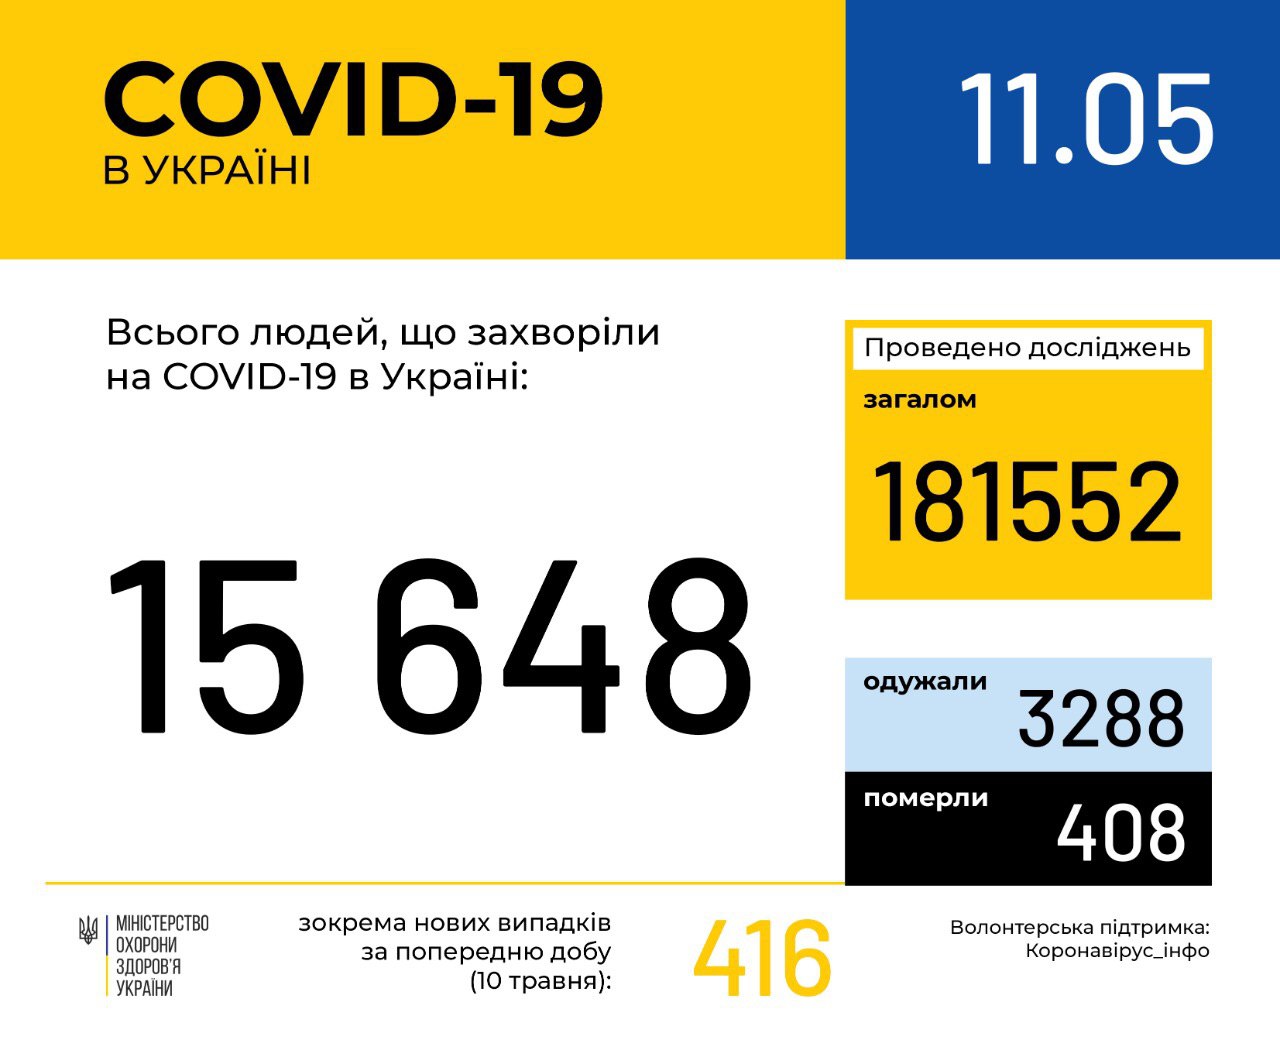 В Україні зафіксовано 15648 випадків коронавірусної хвороби COVID-19, - МОЗ